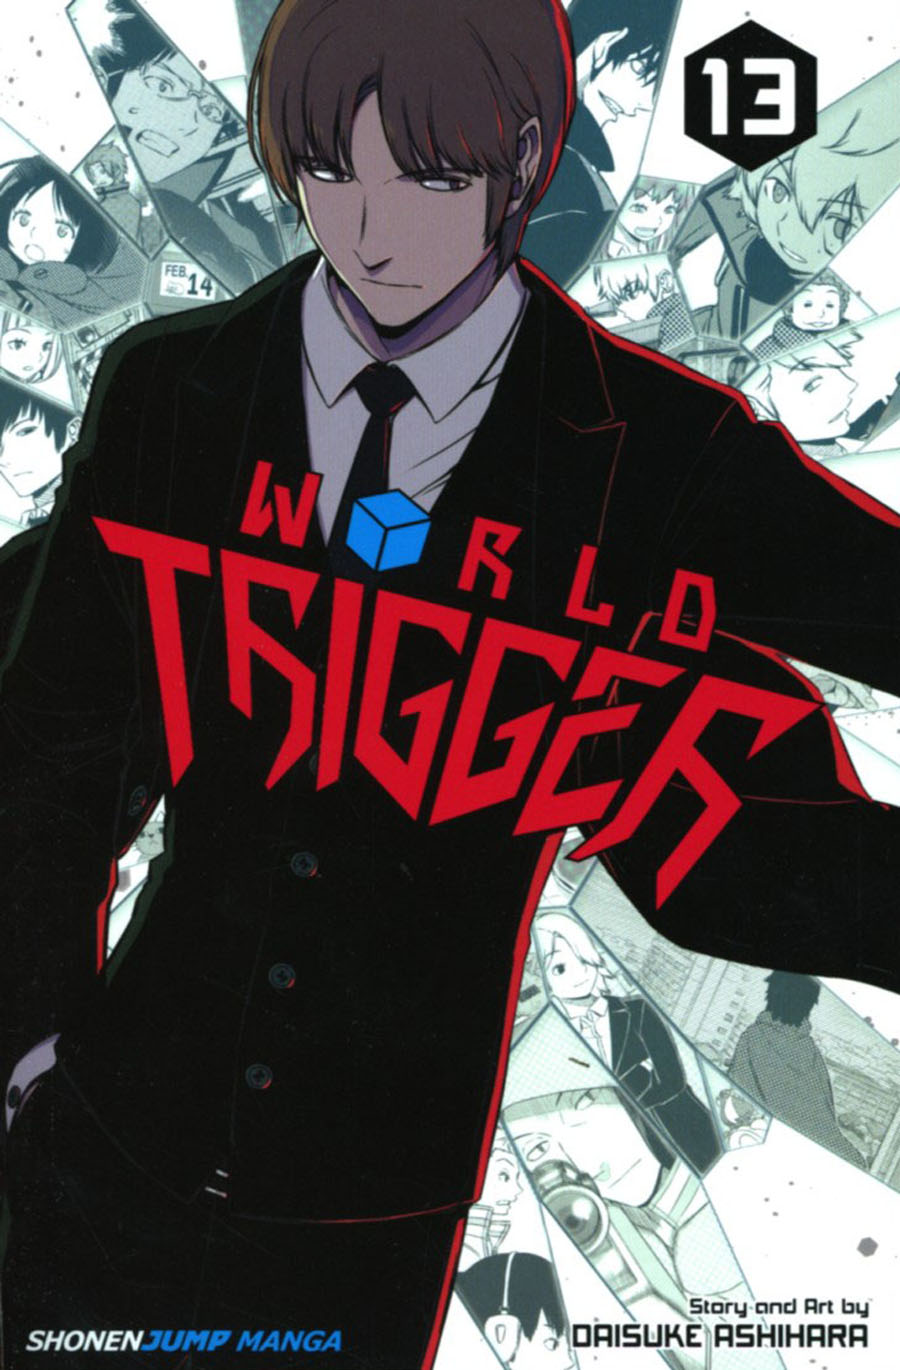 World Trigger Vol 13 TP